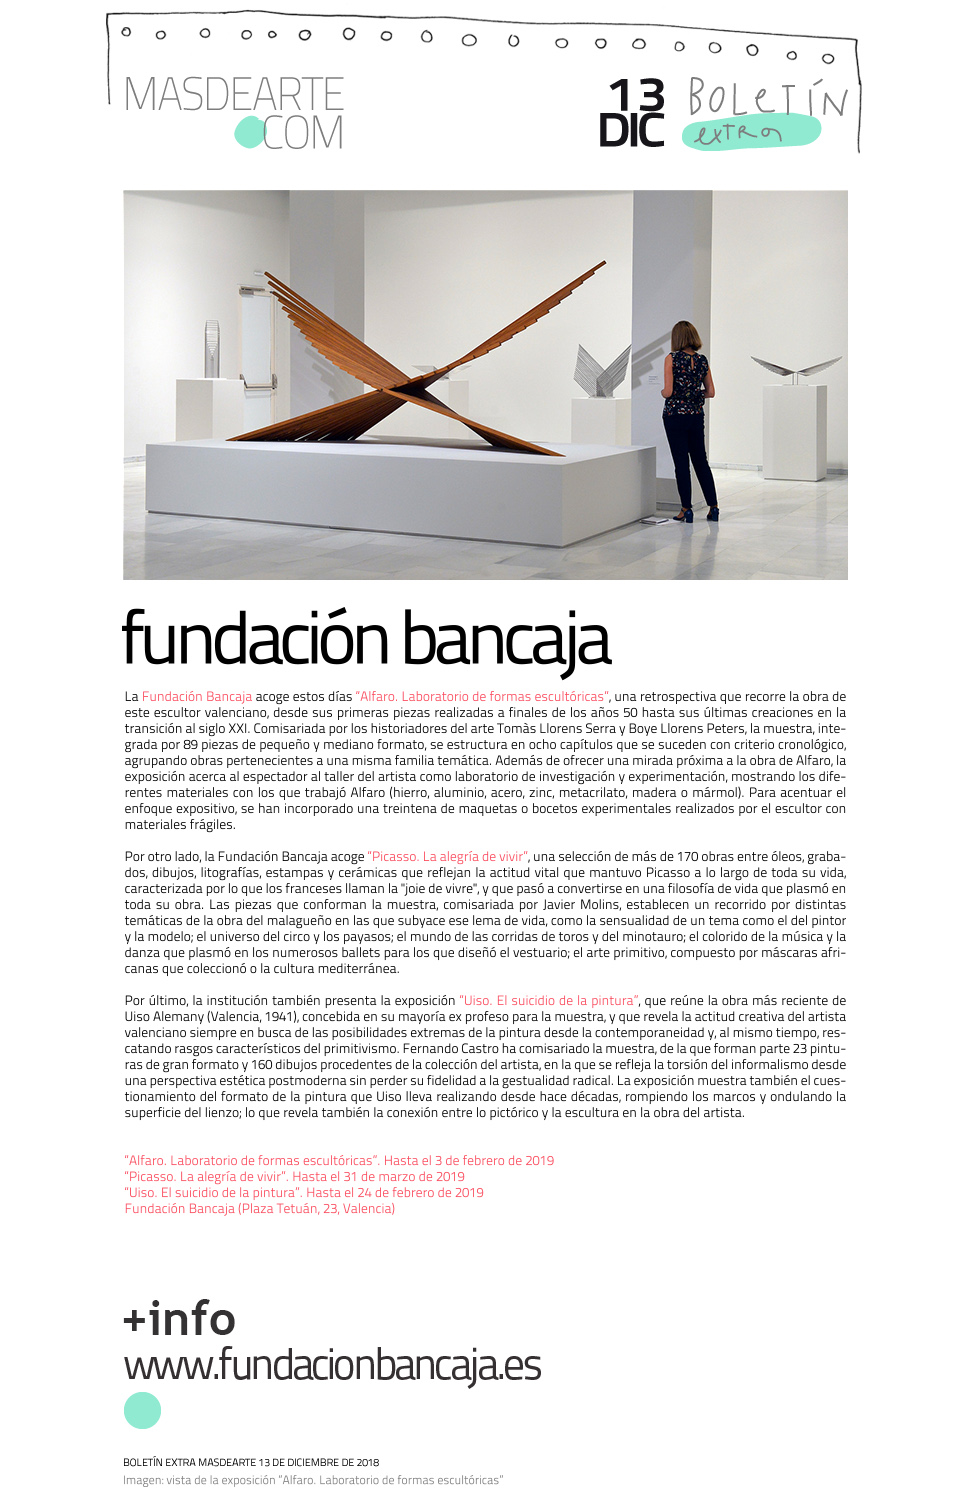 Extra masdearte: programación expositiva de la Fundación Bancaja:
 Alfaro, Picasso y Uiso